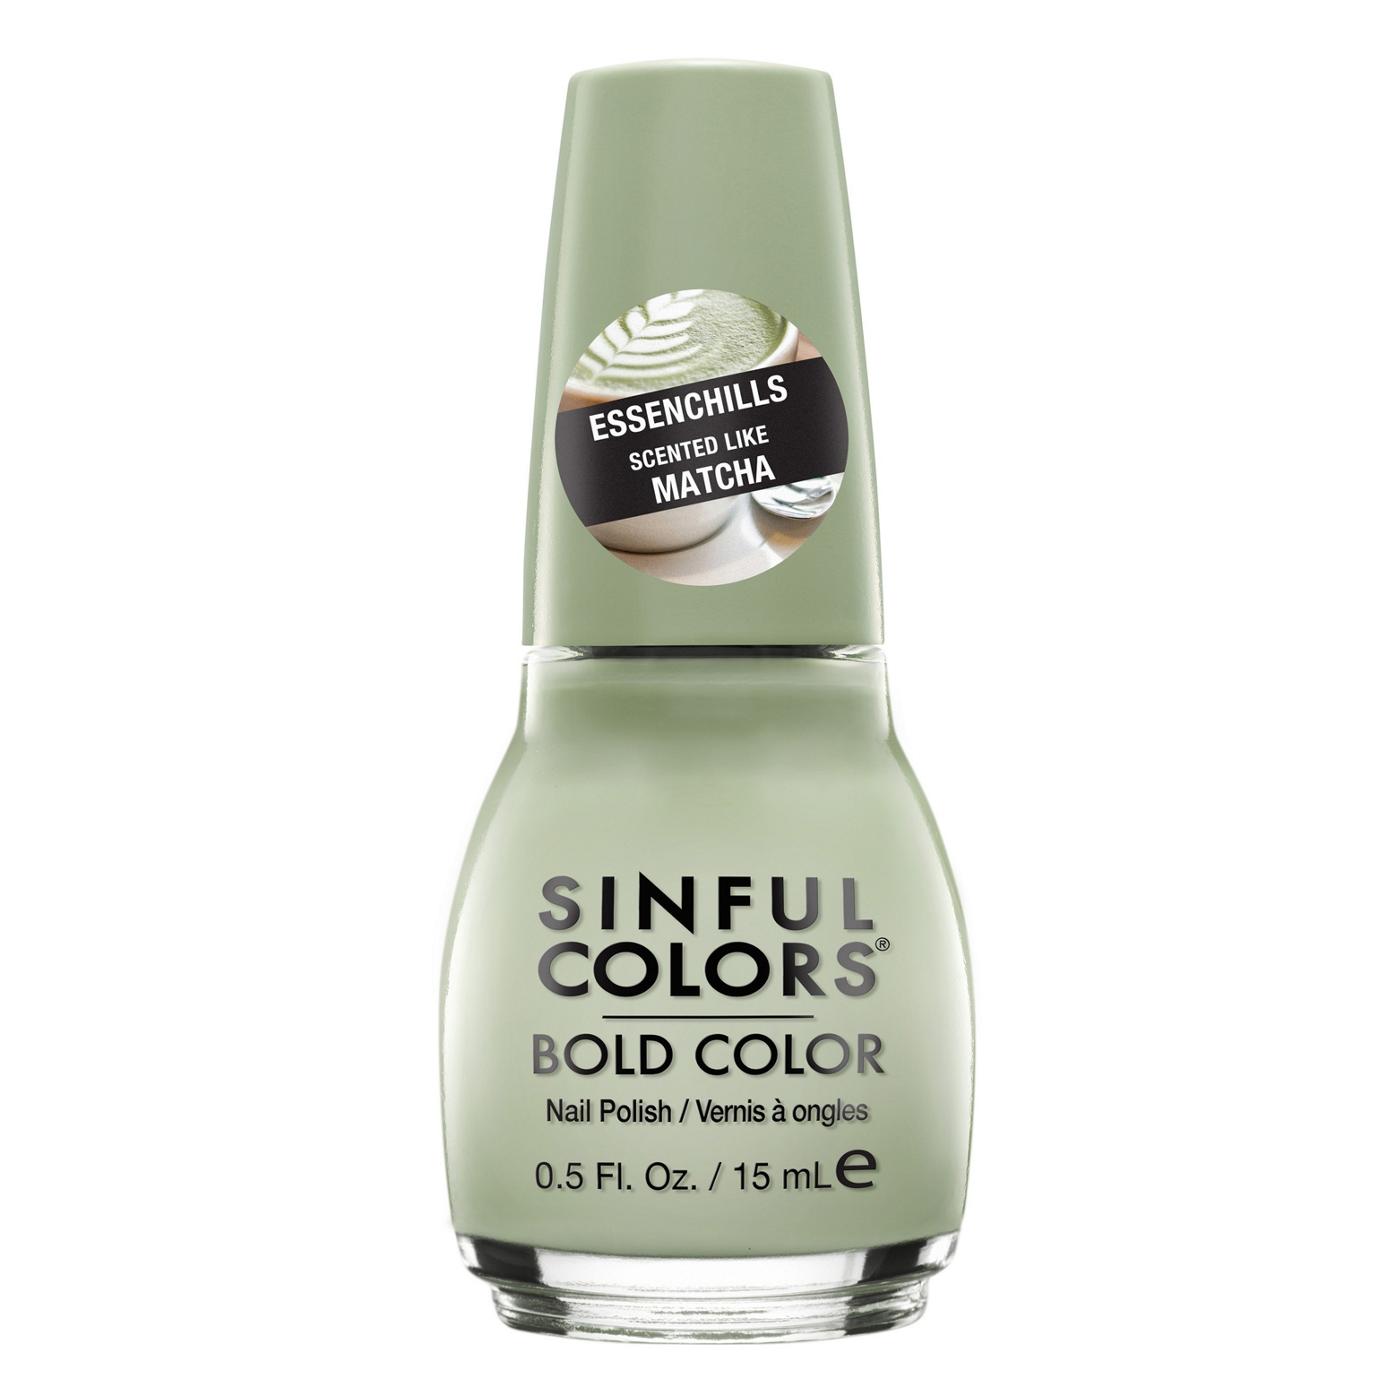 Sinful Colors Essenchills Nail Polish - Matcha; image 1 of 3